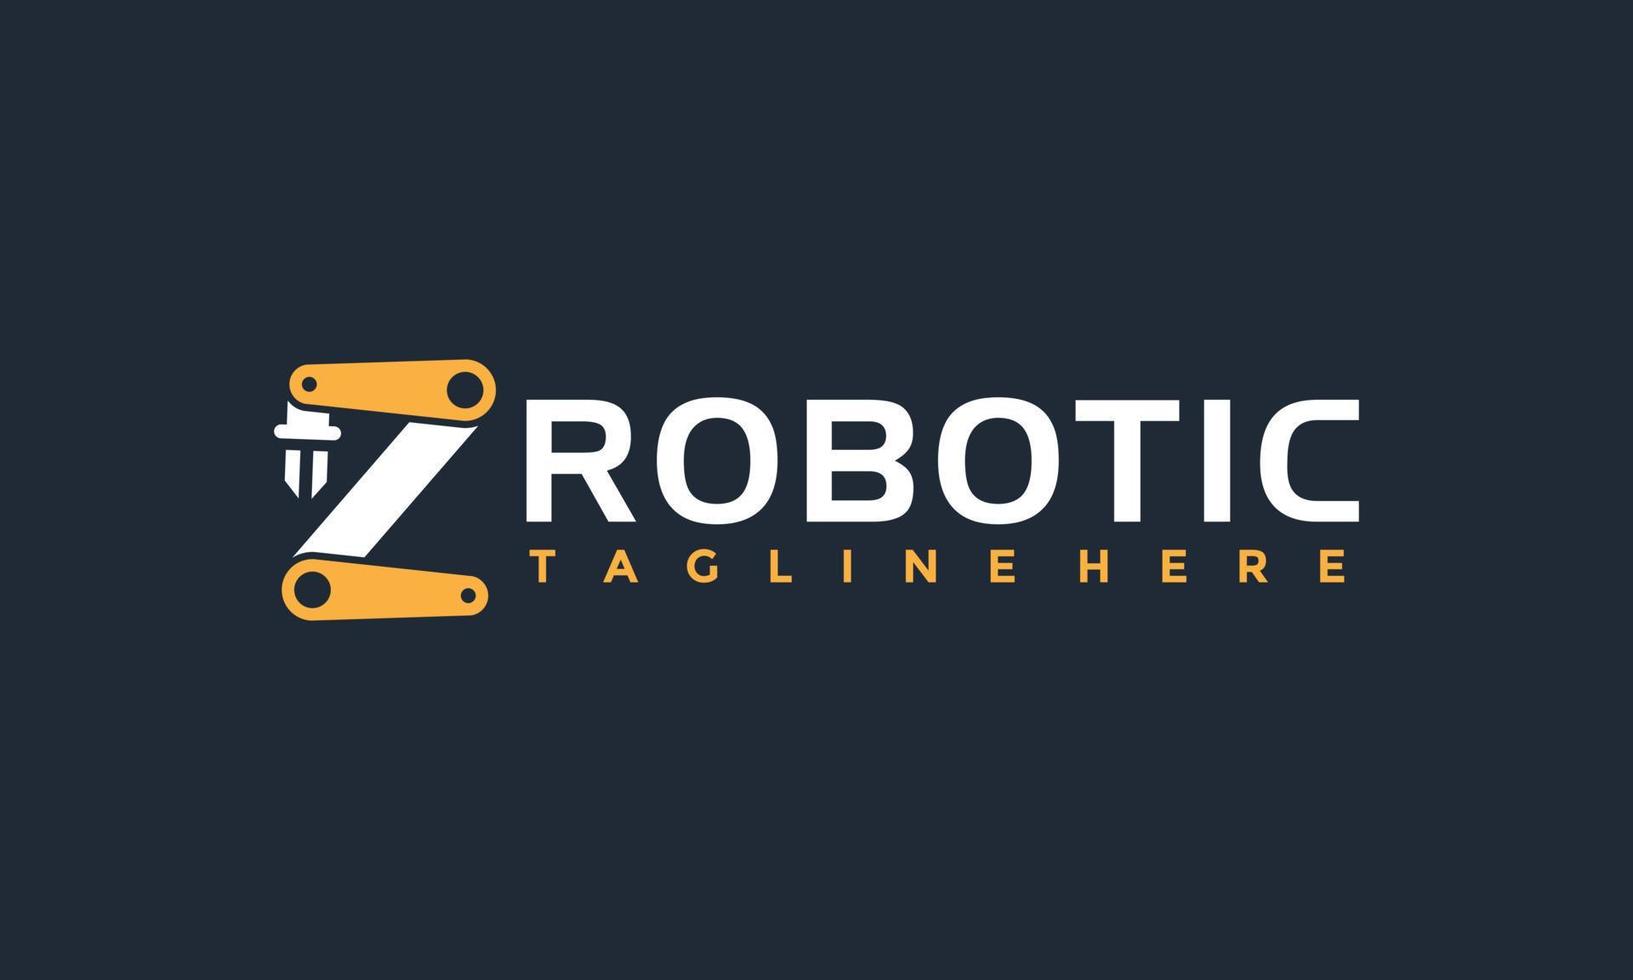 Initiale z Roboter Arm Logo vektor